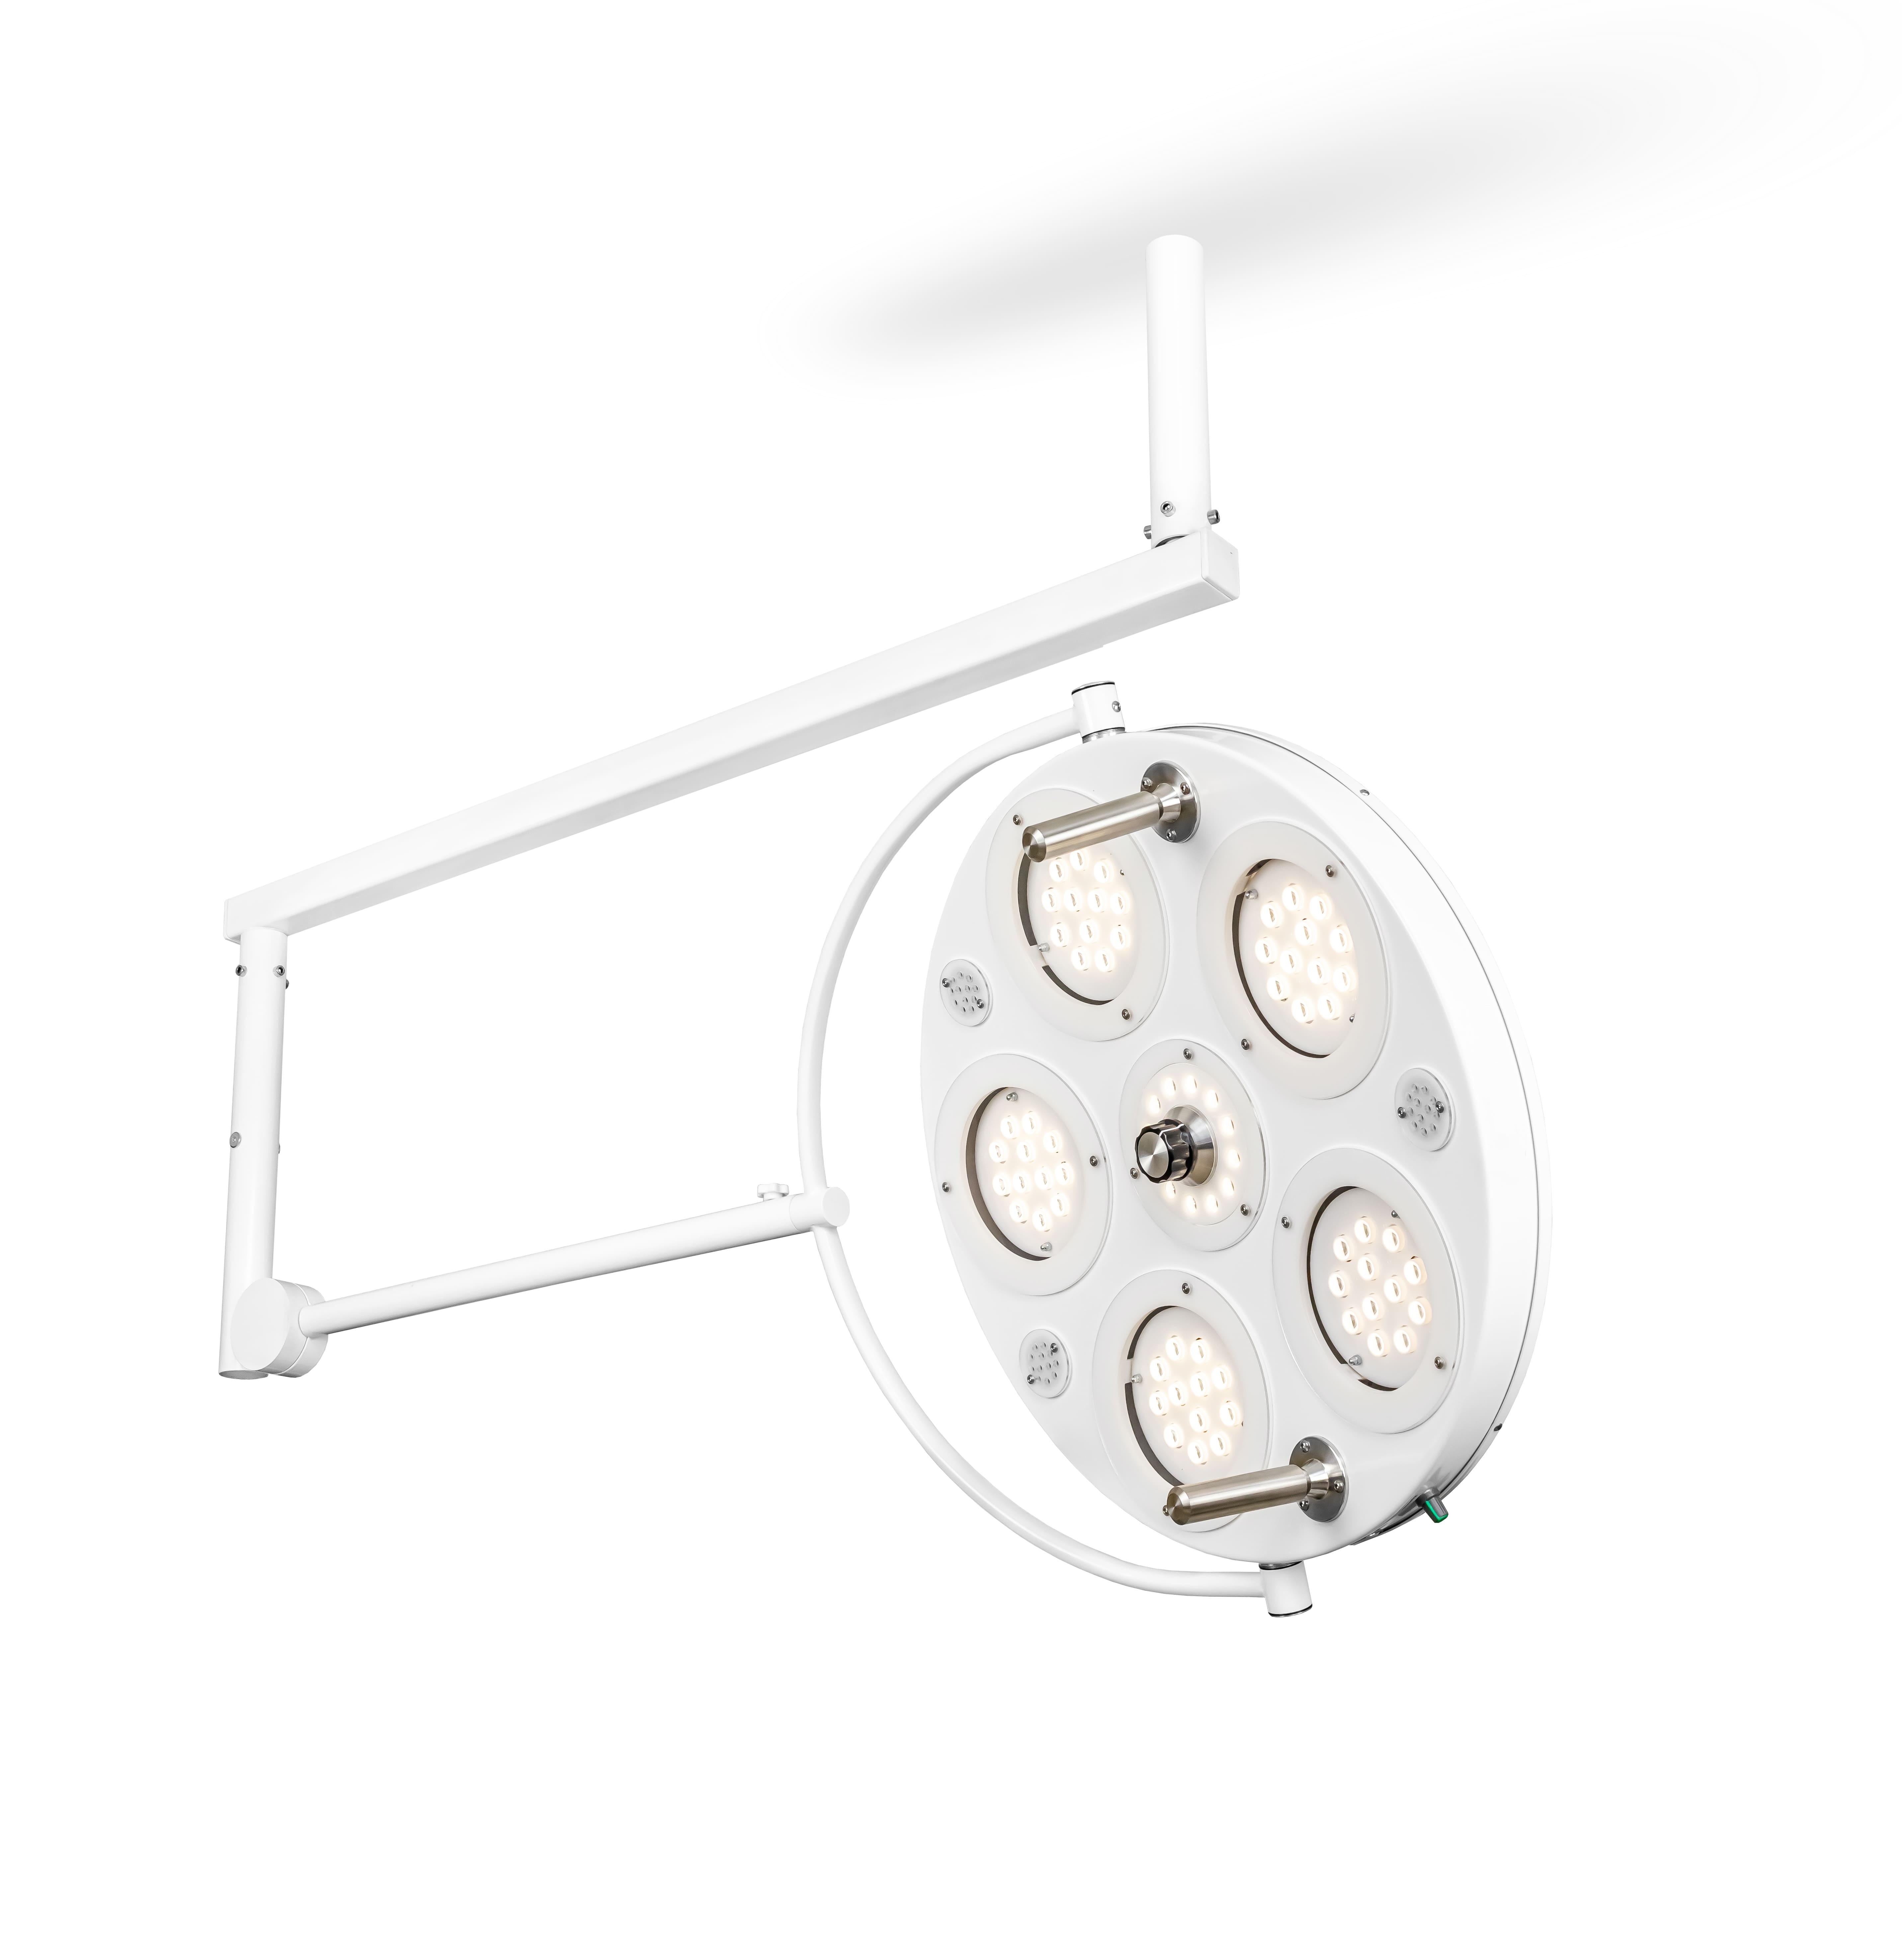 Медицинский хирургический светильник «FotonFly 6М», потолочный подвес - FotonFly 6М